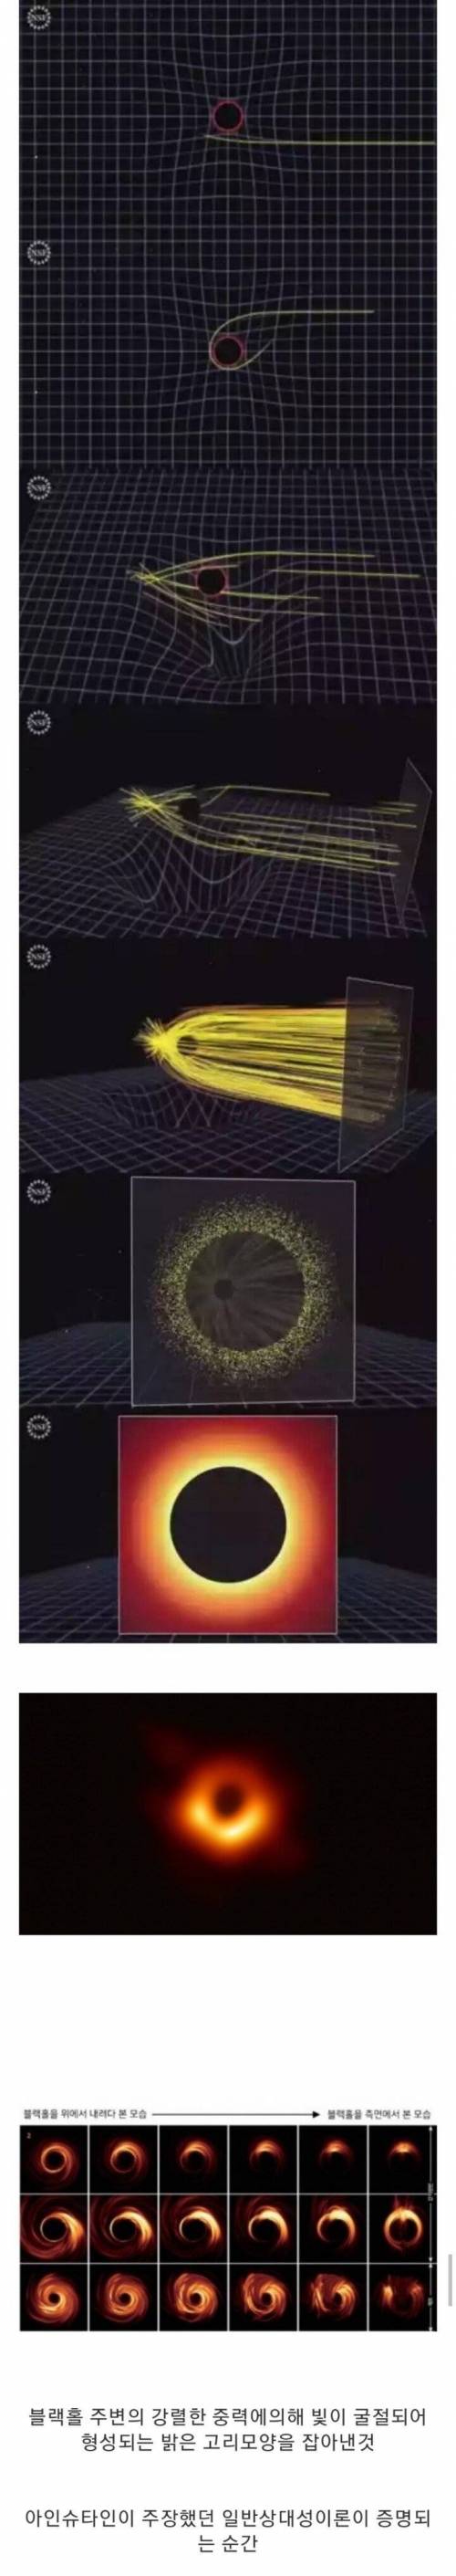 블랙홀을 촬영한 원리.jpg